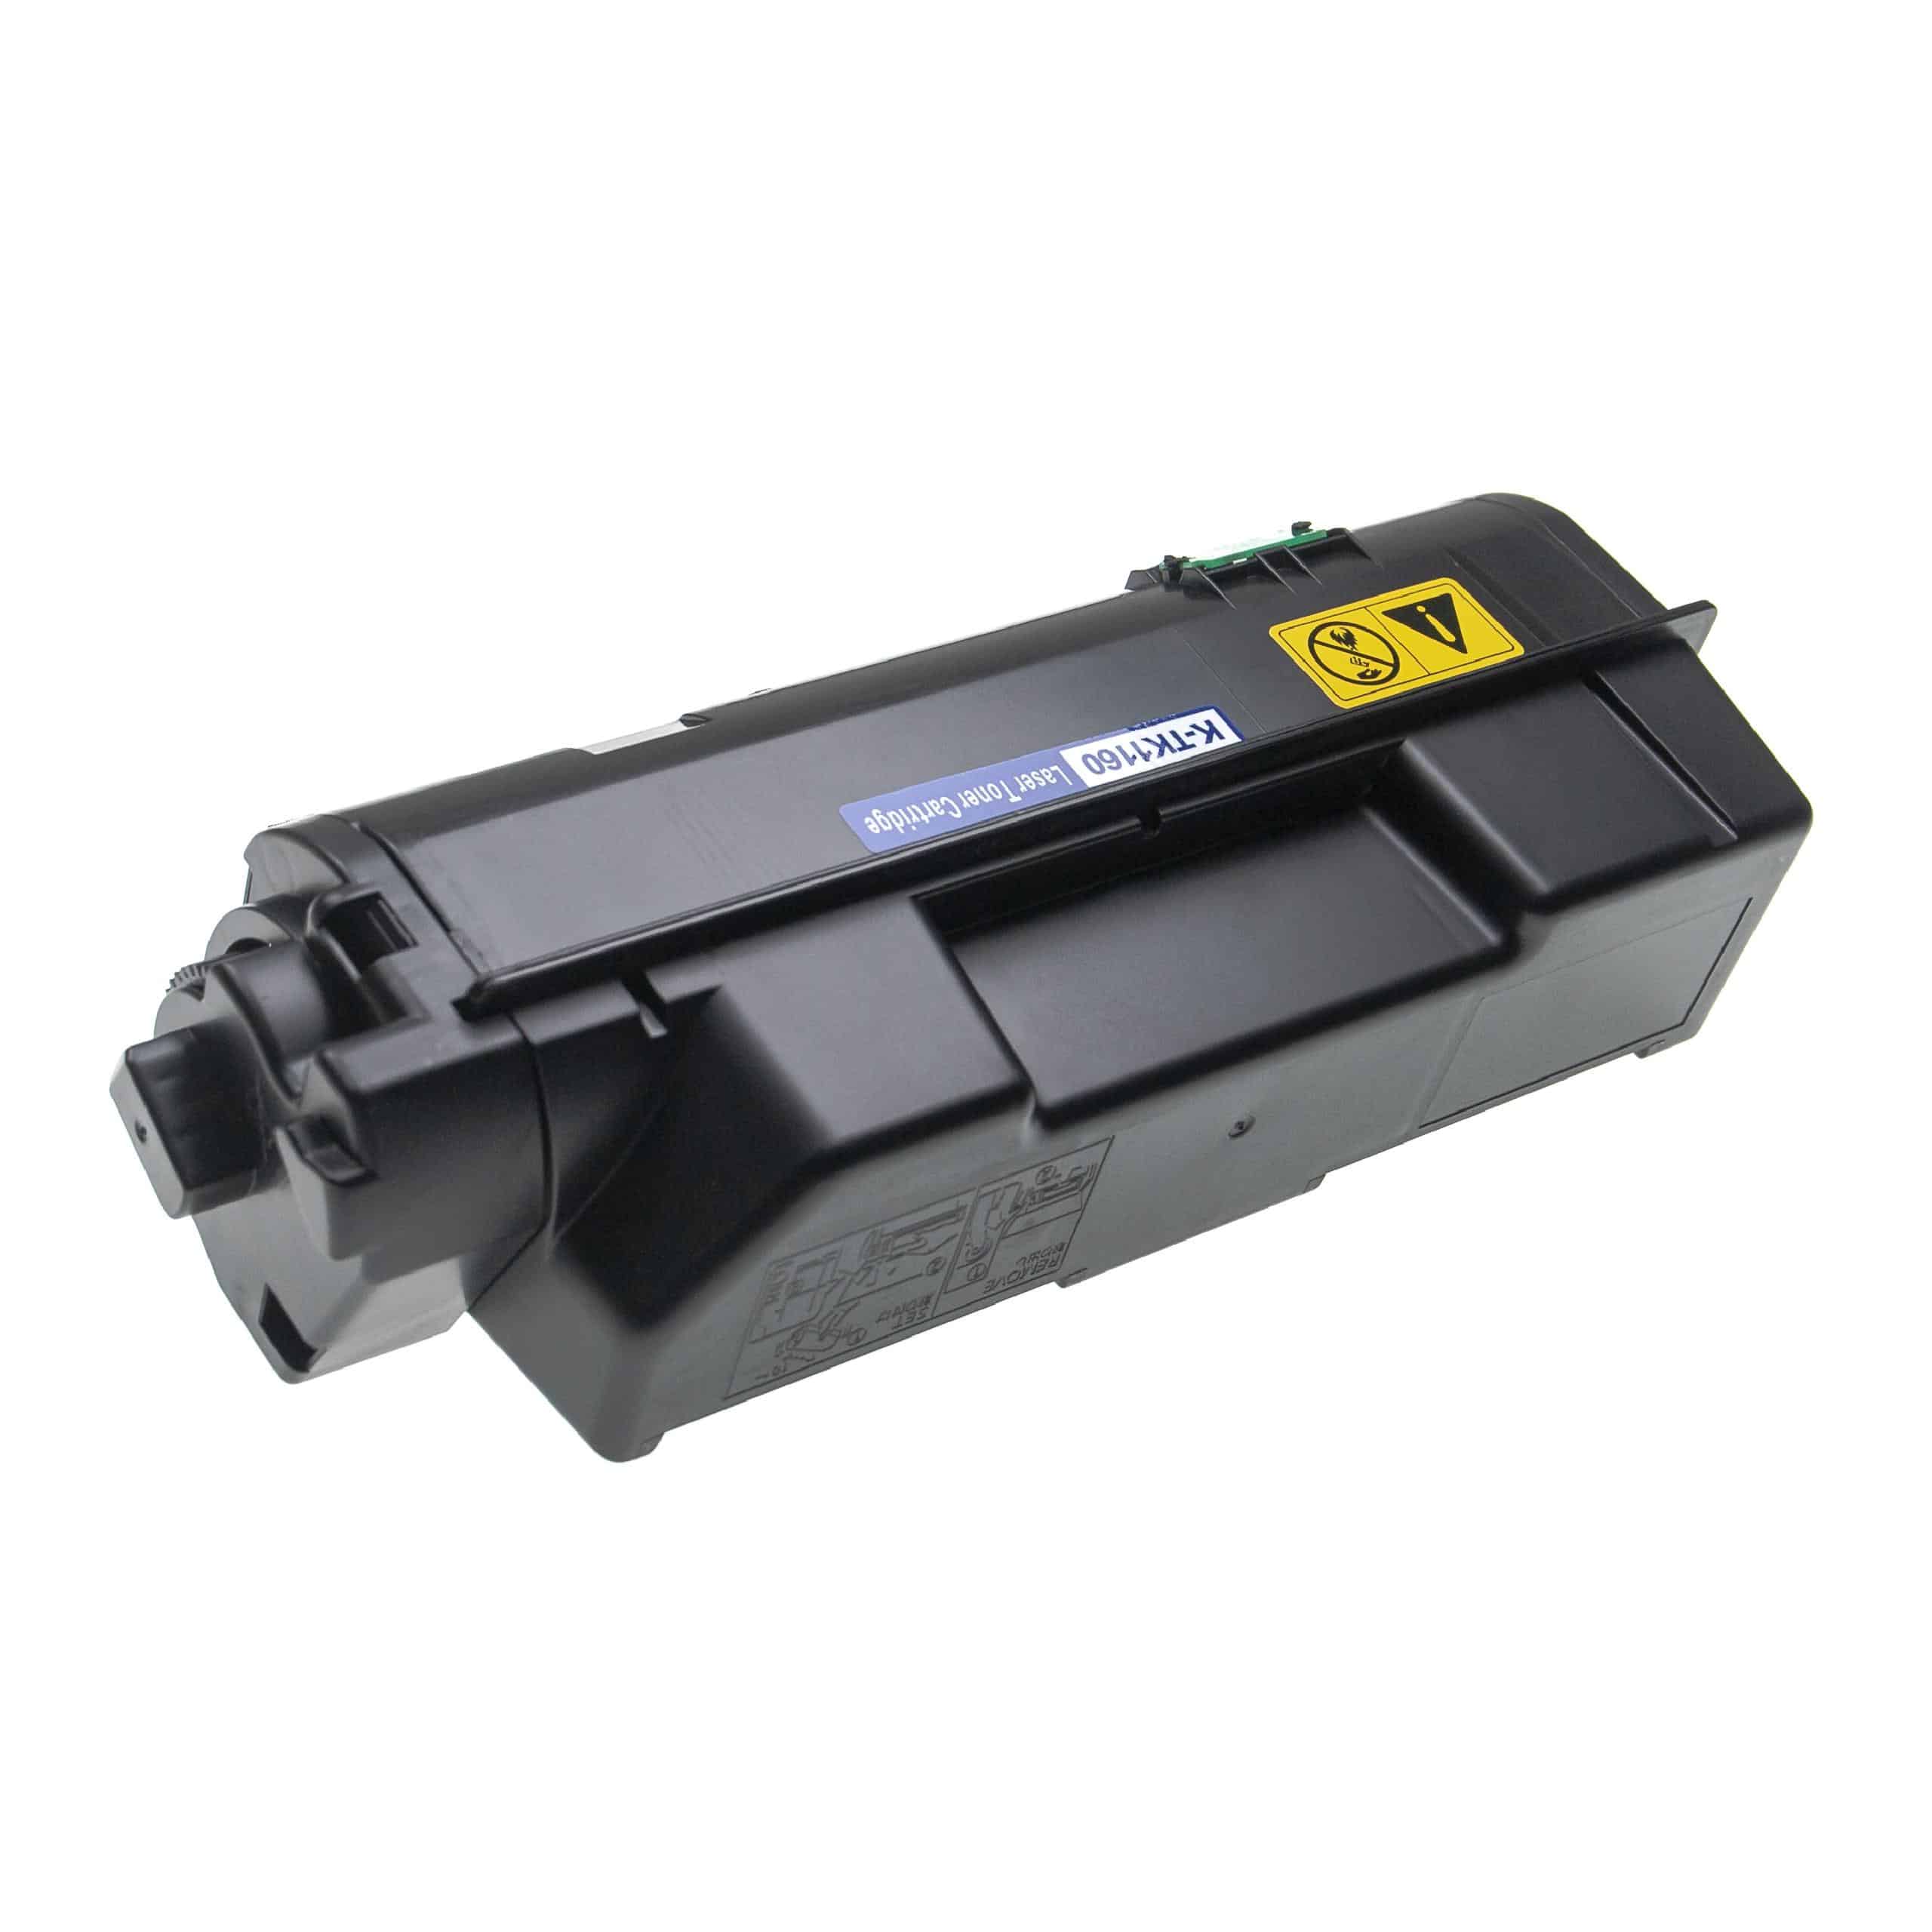 2x Cartouches de toner remplace Kyocera TK-1160 pour imprimante laser Kyocera, noir